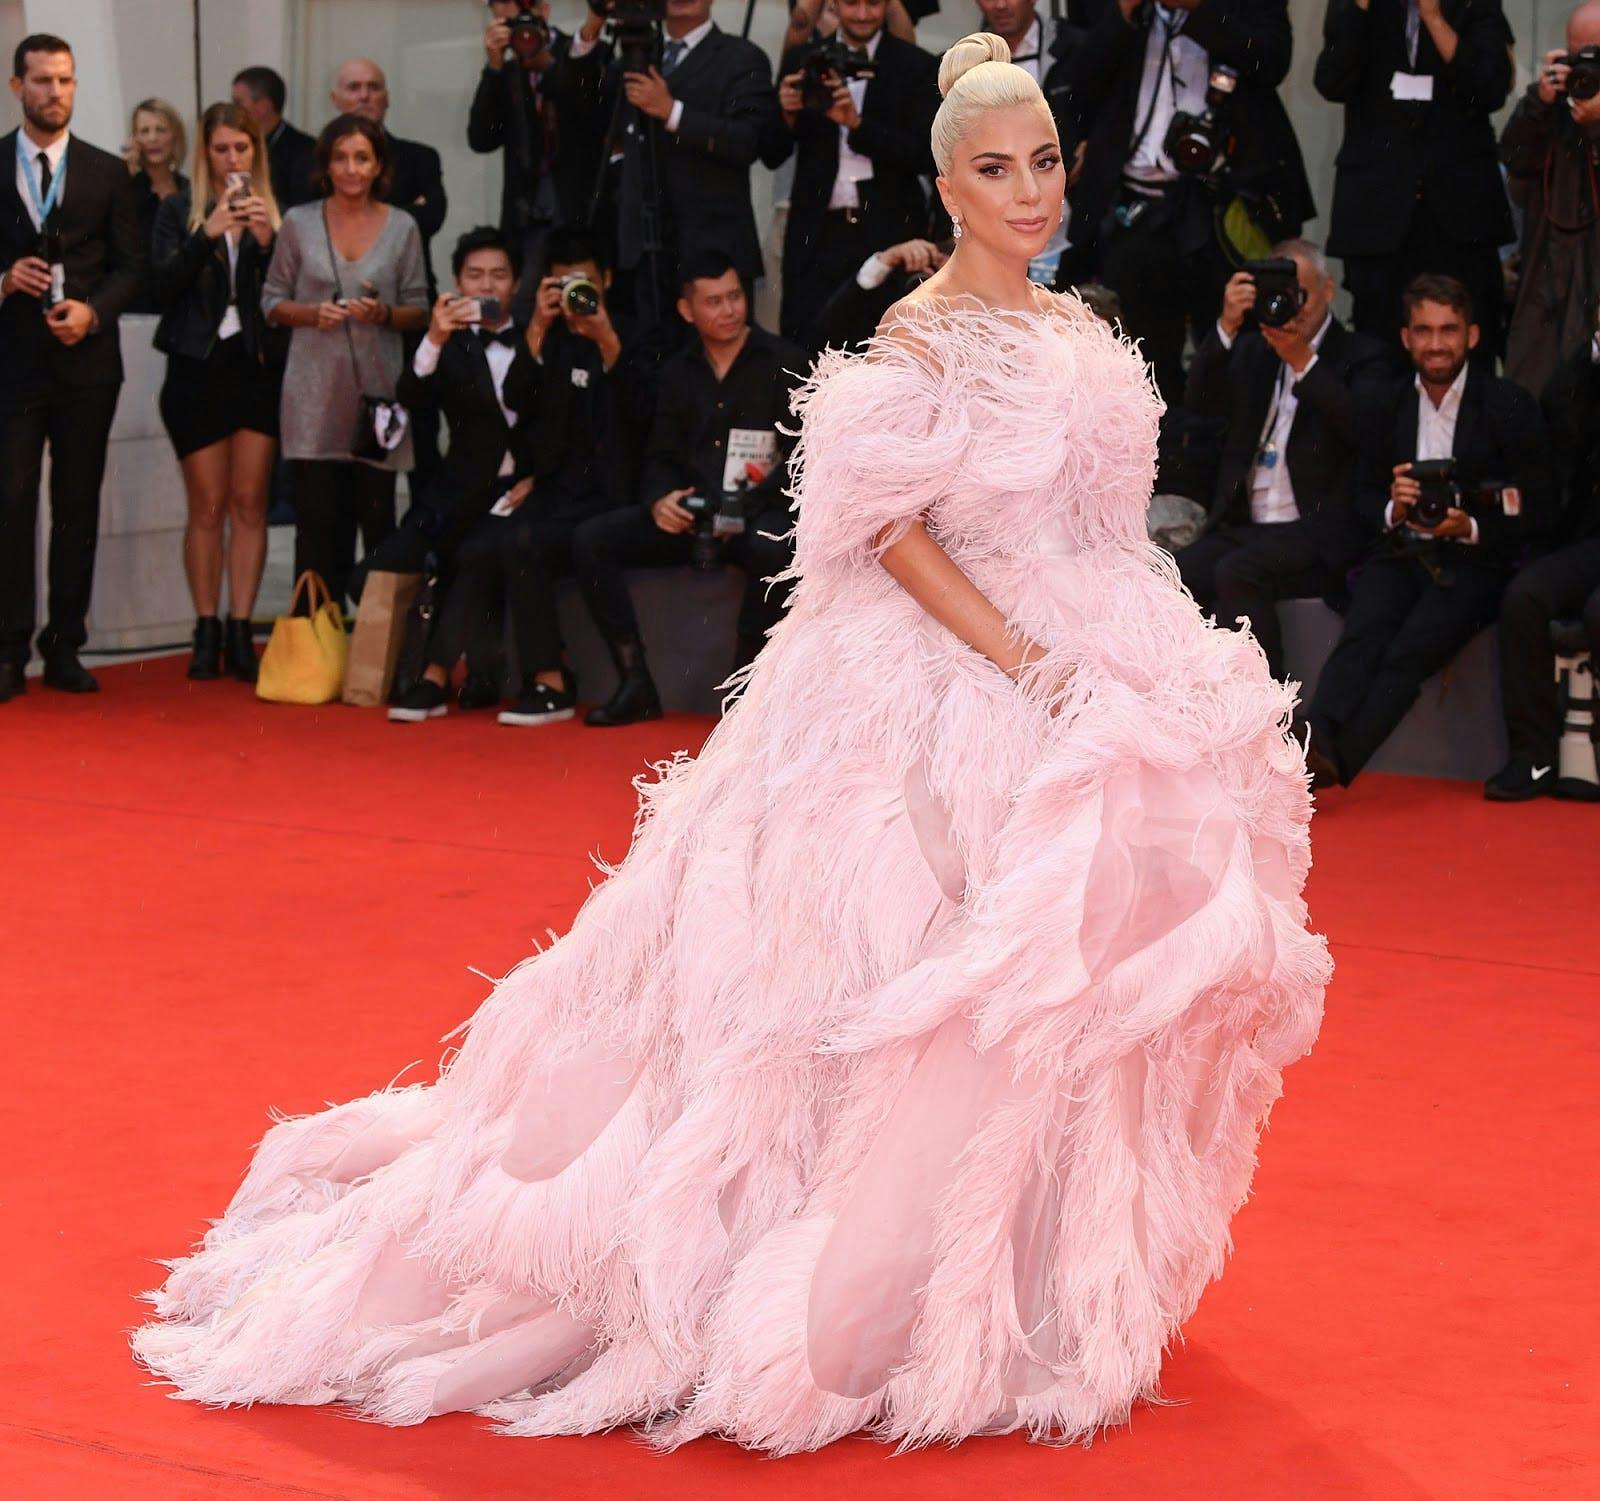 Lady Gaga wears Valentino Haute Couture at the 2018 Venice Film Festival.